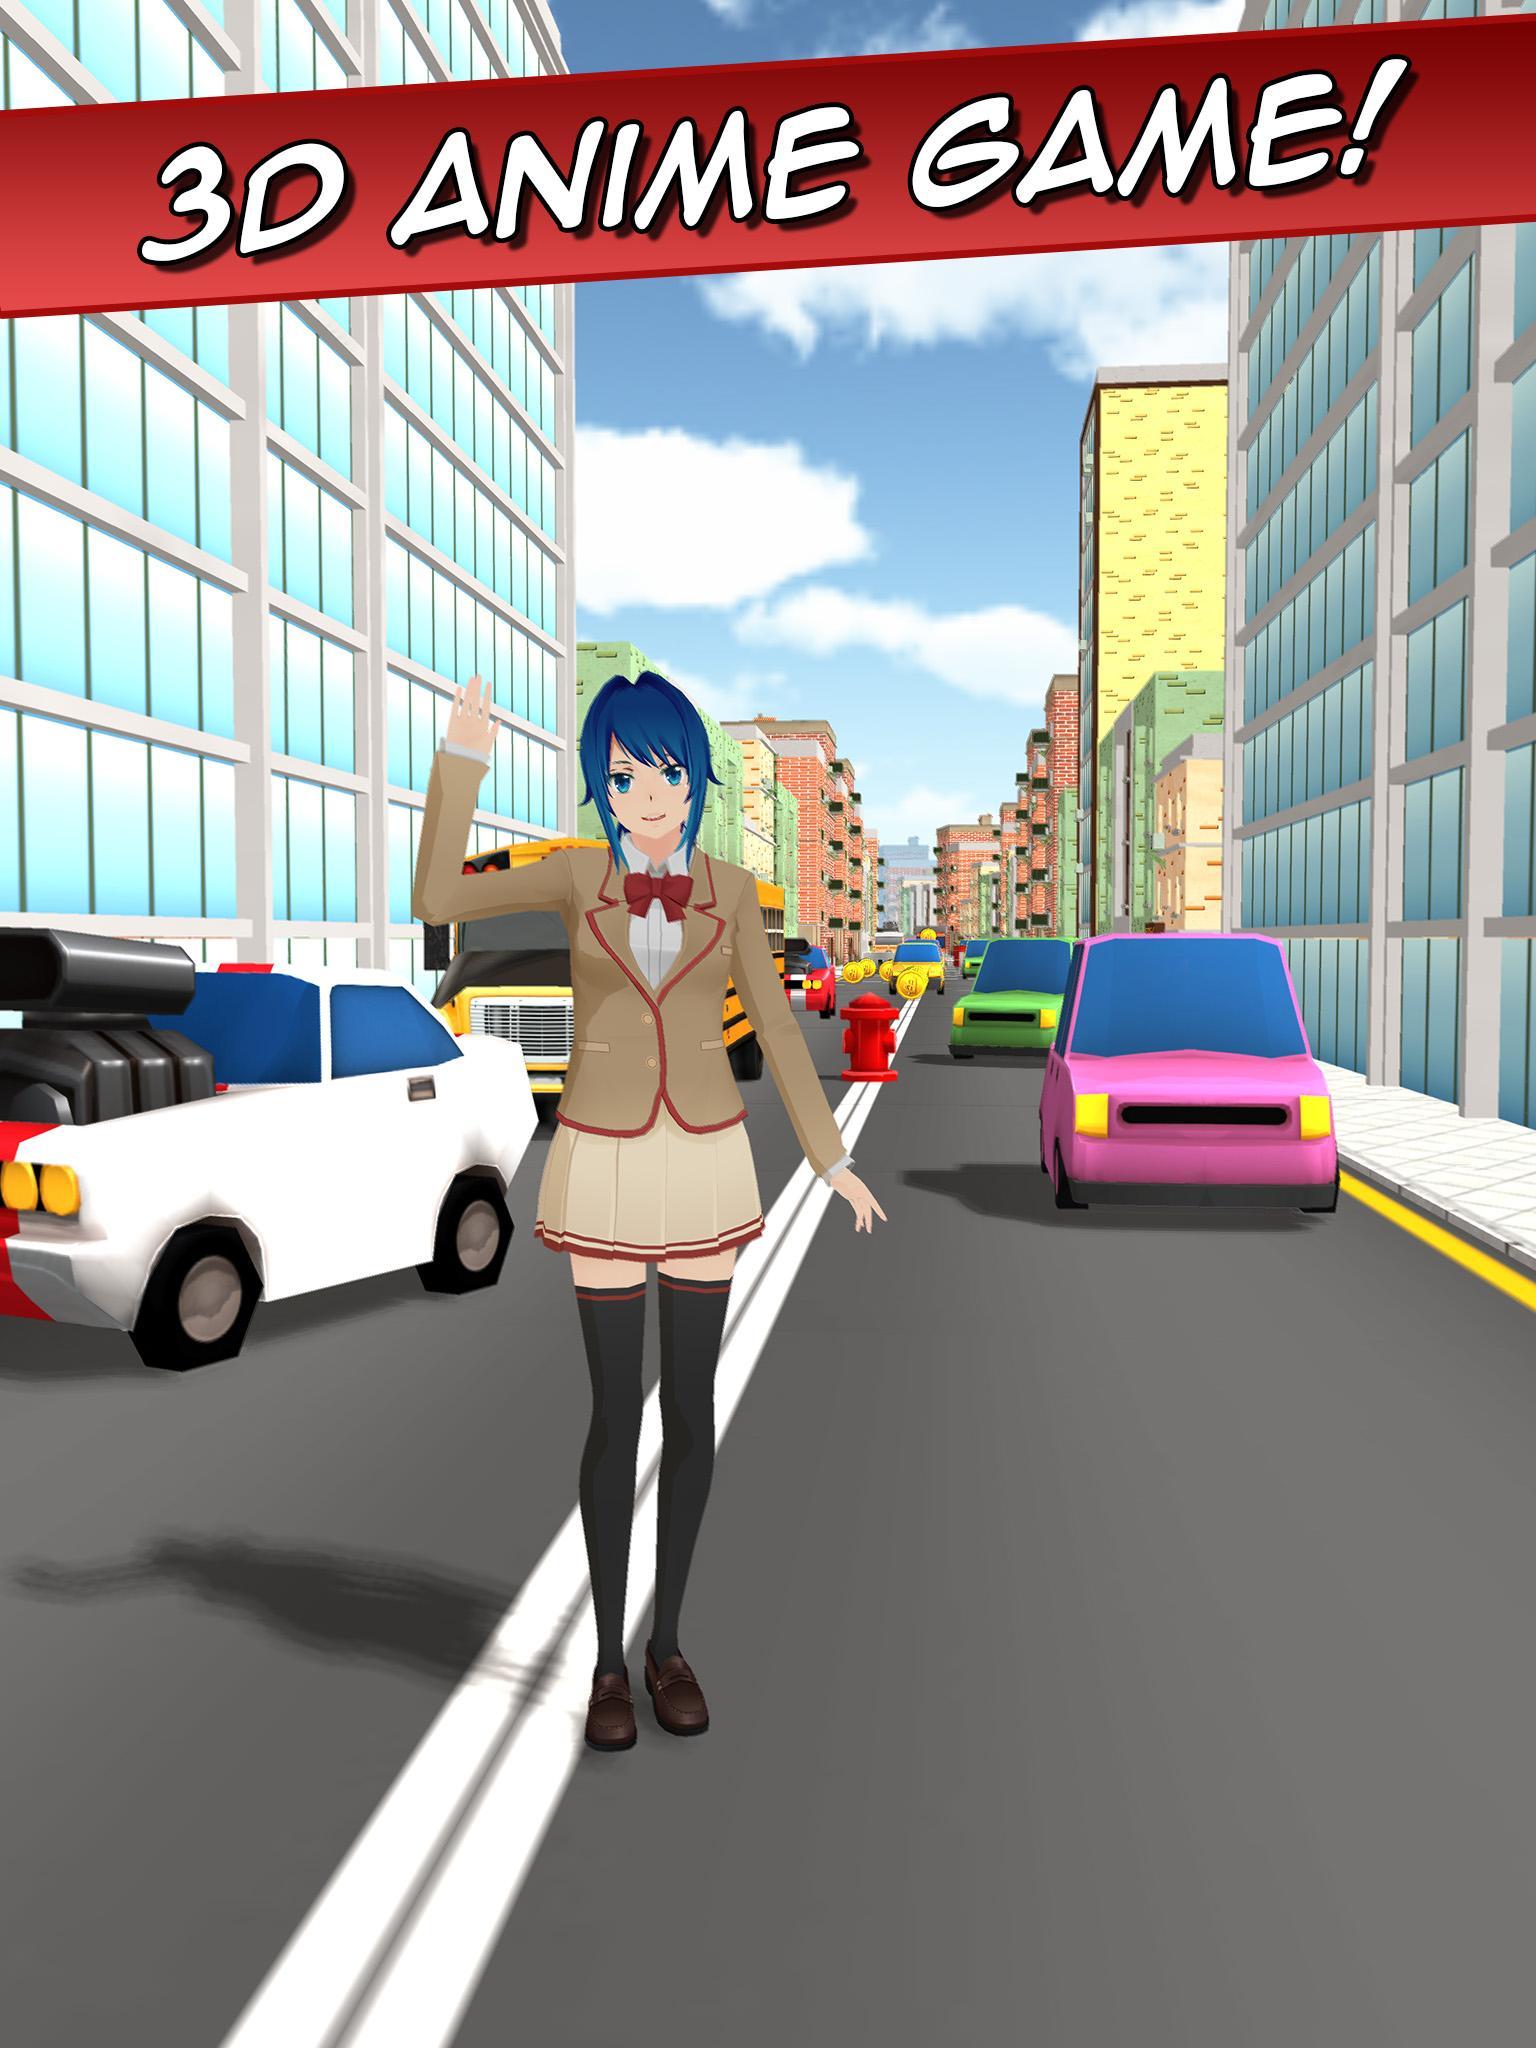 ساكورا فتاة جميلة أنيمي كاريرا for Android - APK Download